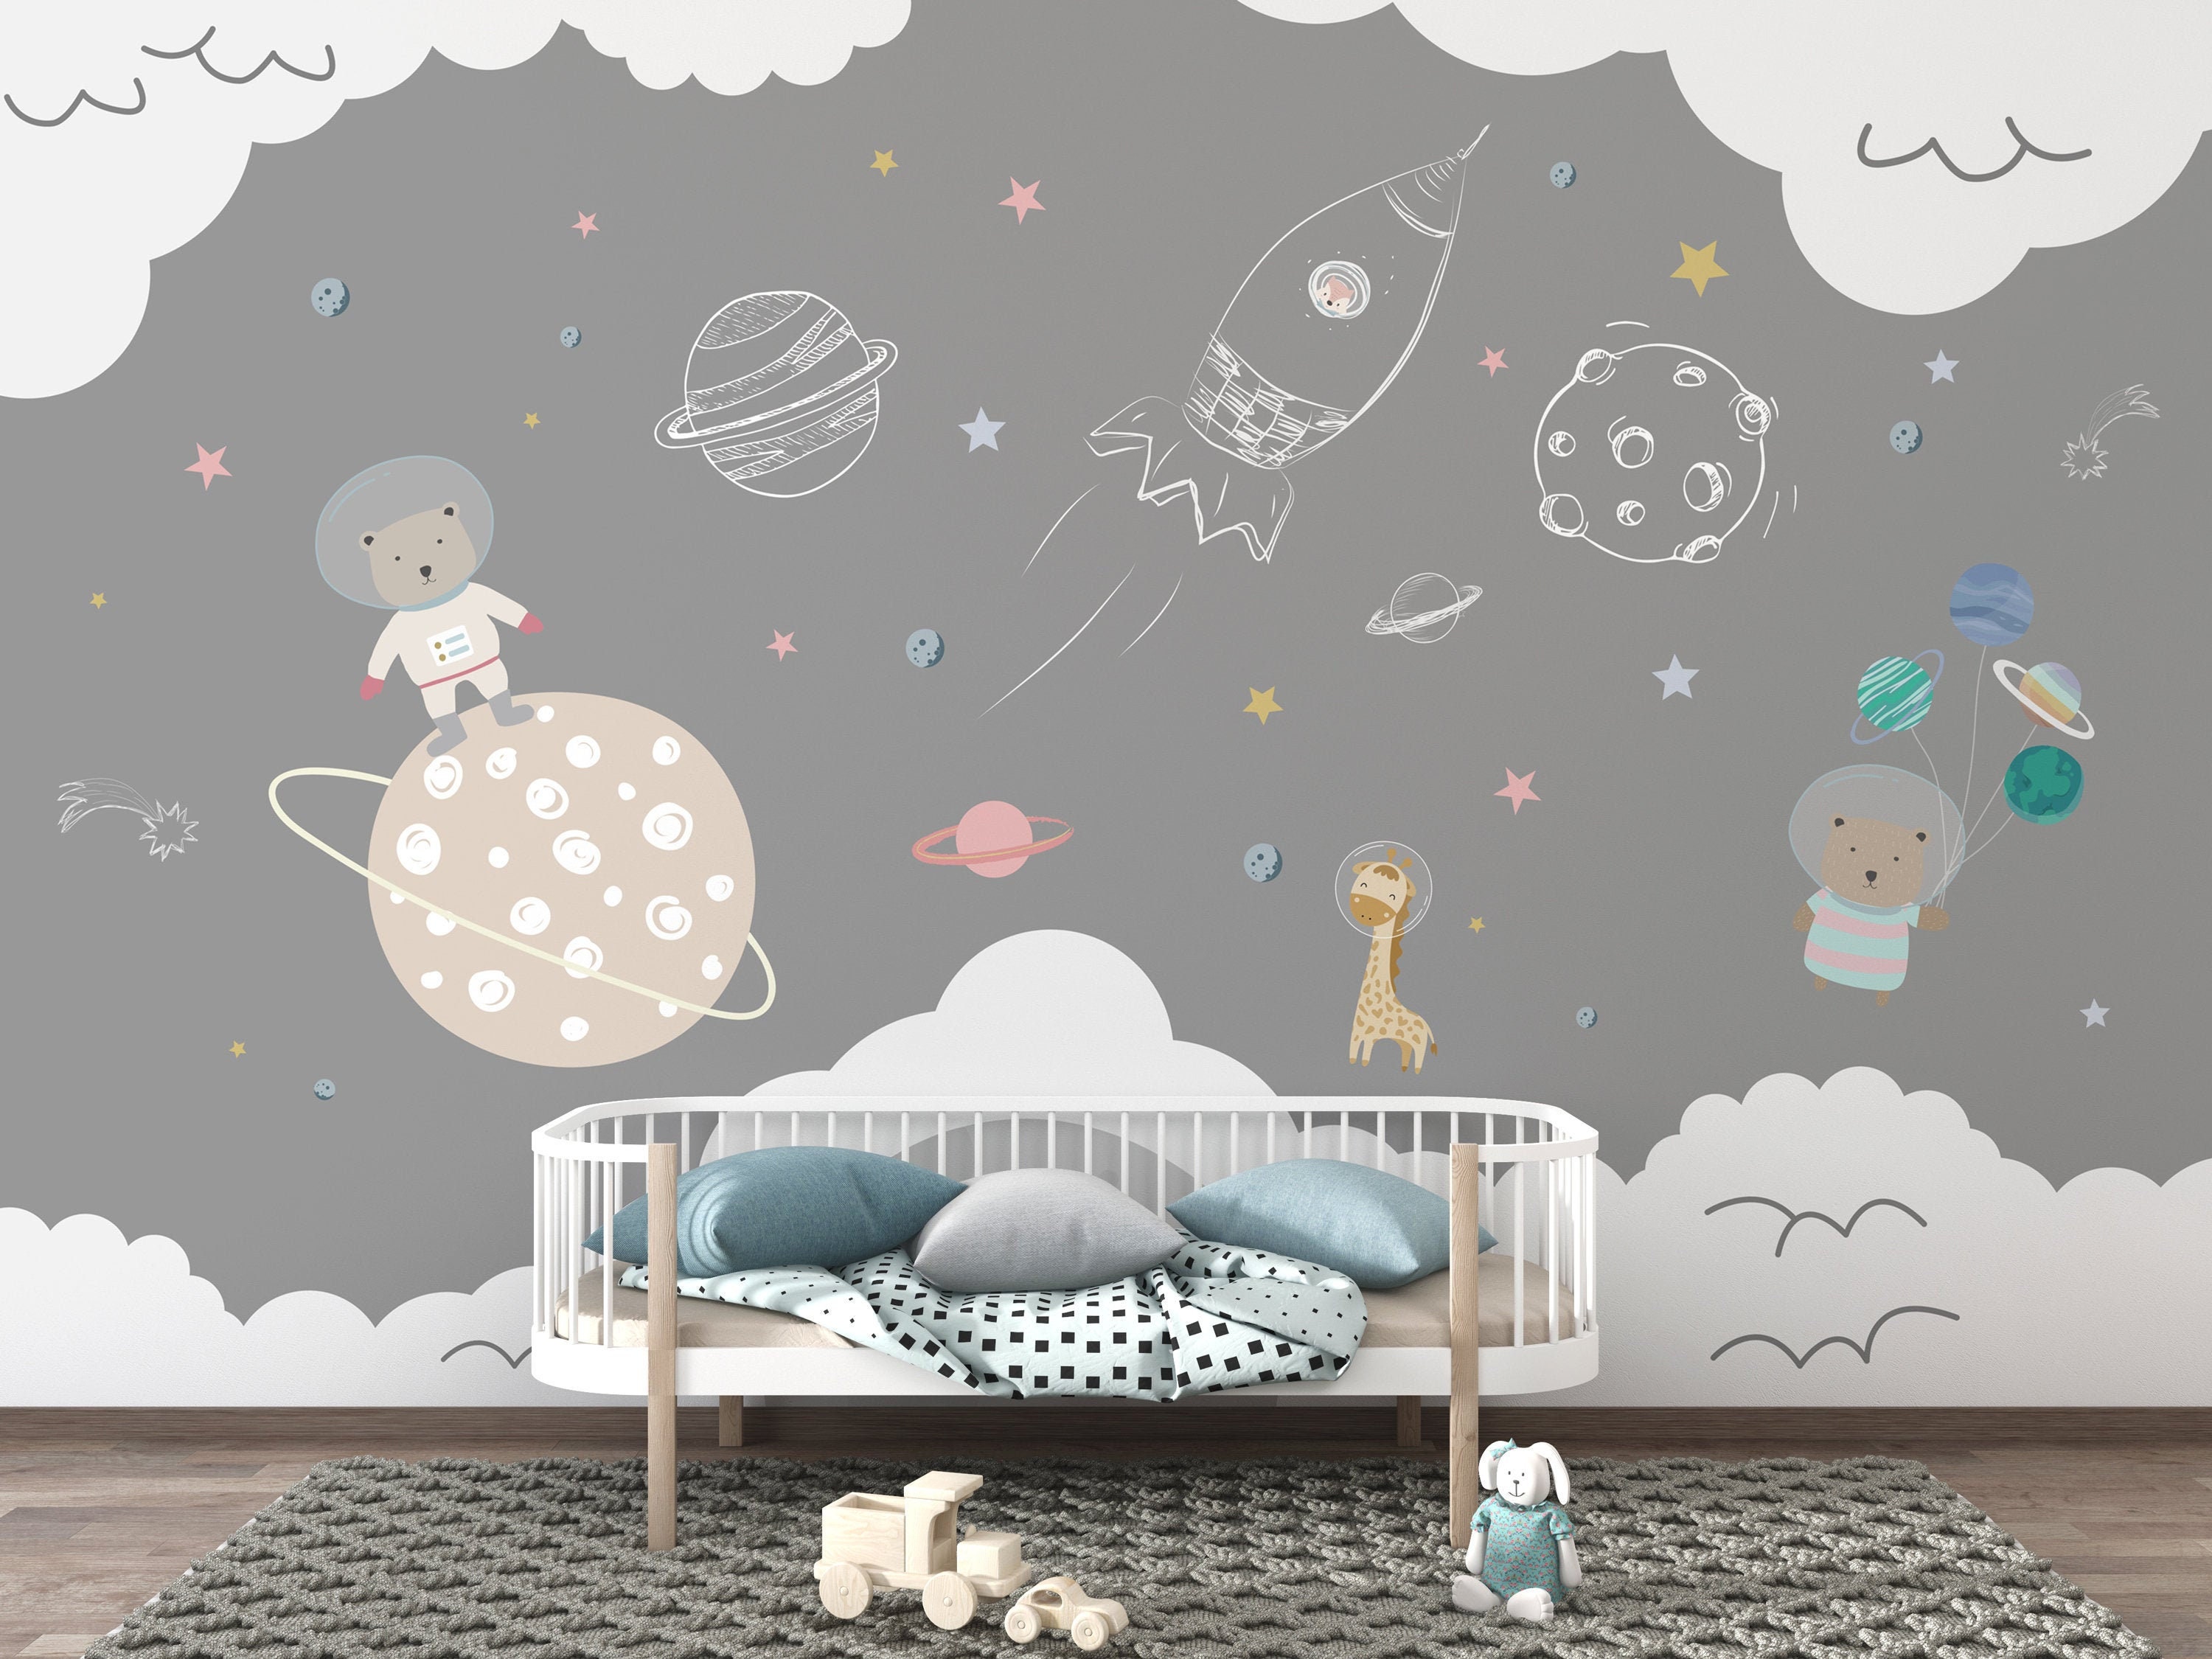  Papel pintado para pared, diseño de gato en espacio espacial  para niños, papel pintado autoadhesivo, papel de pared, mural de pared  moderno, para dormitorio y sala de estar para decoración de